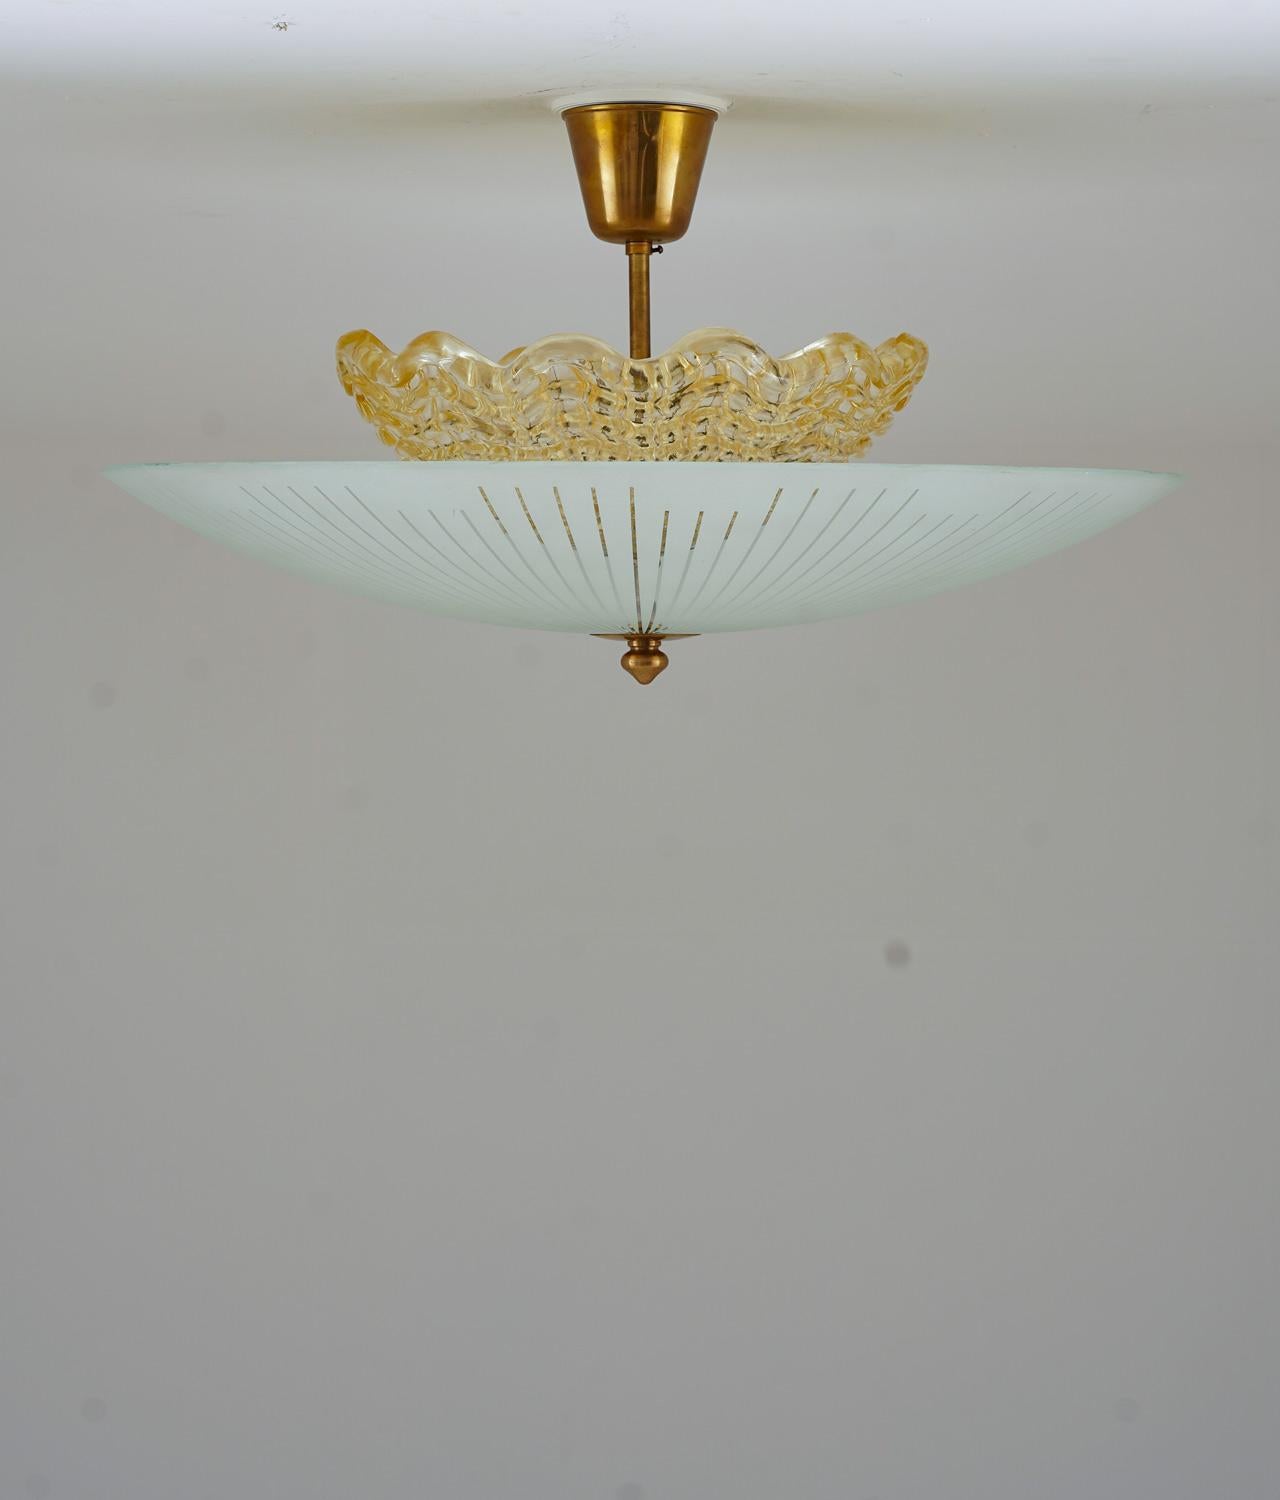 Schöne Unterputzleuchte aus Messing und Milchglas, hergestellt von Orrefors in Schweden um 1950.
Die Lampe besteht aus einem bernsteinfarbenen Innenschirm, hinter dem sich drei Glühbirnen verbergen. Der innere Schirm ist von einem großen äußeren